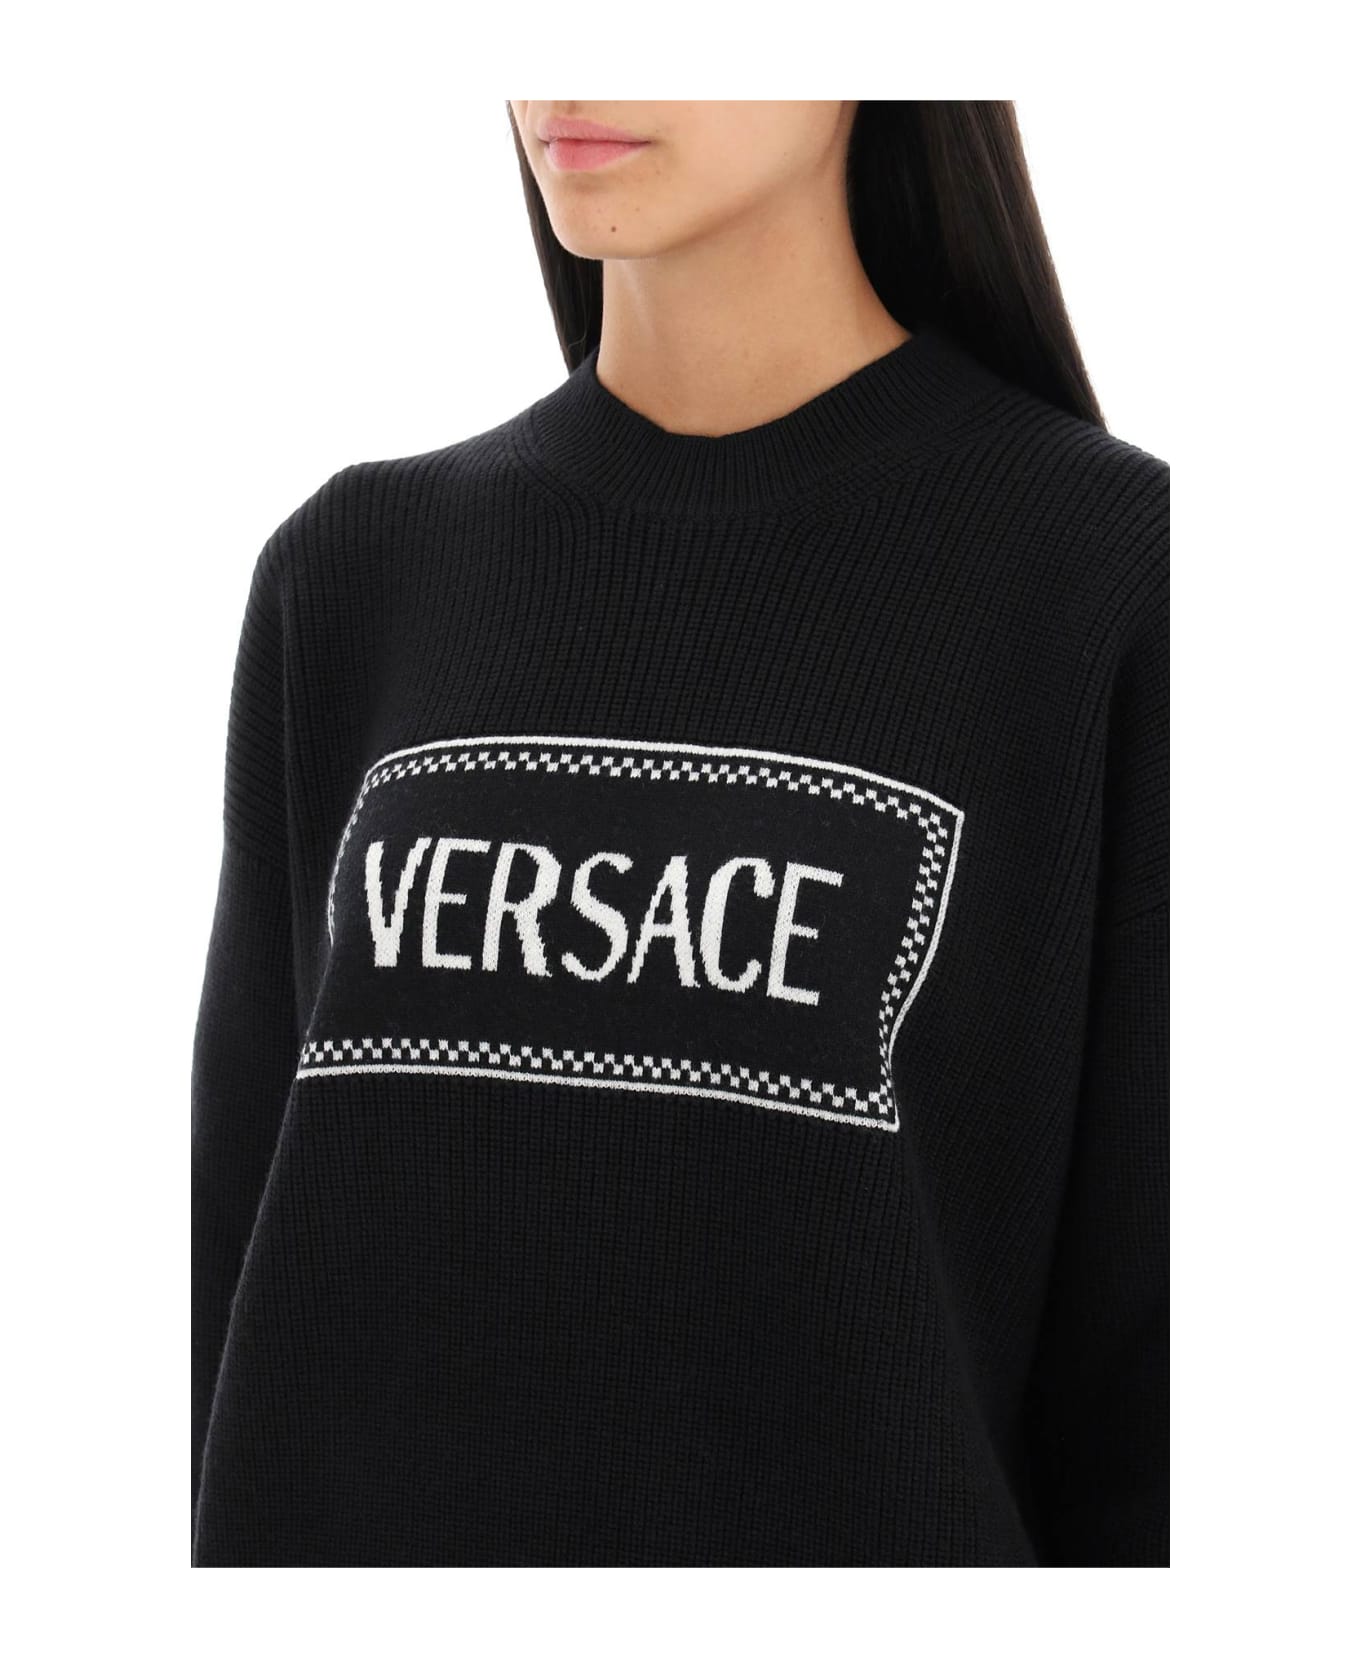 Versace Sweater - Nero+bianco